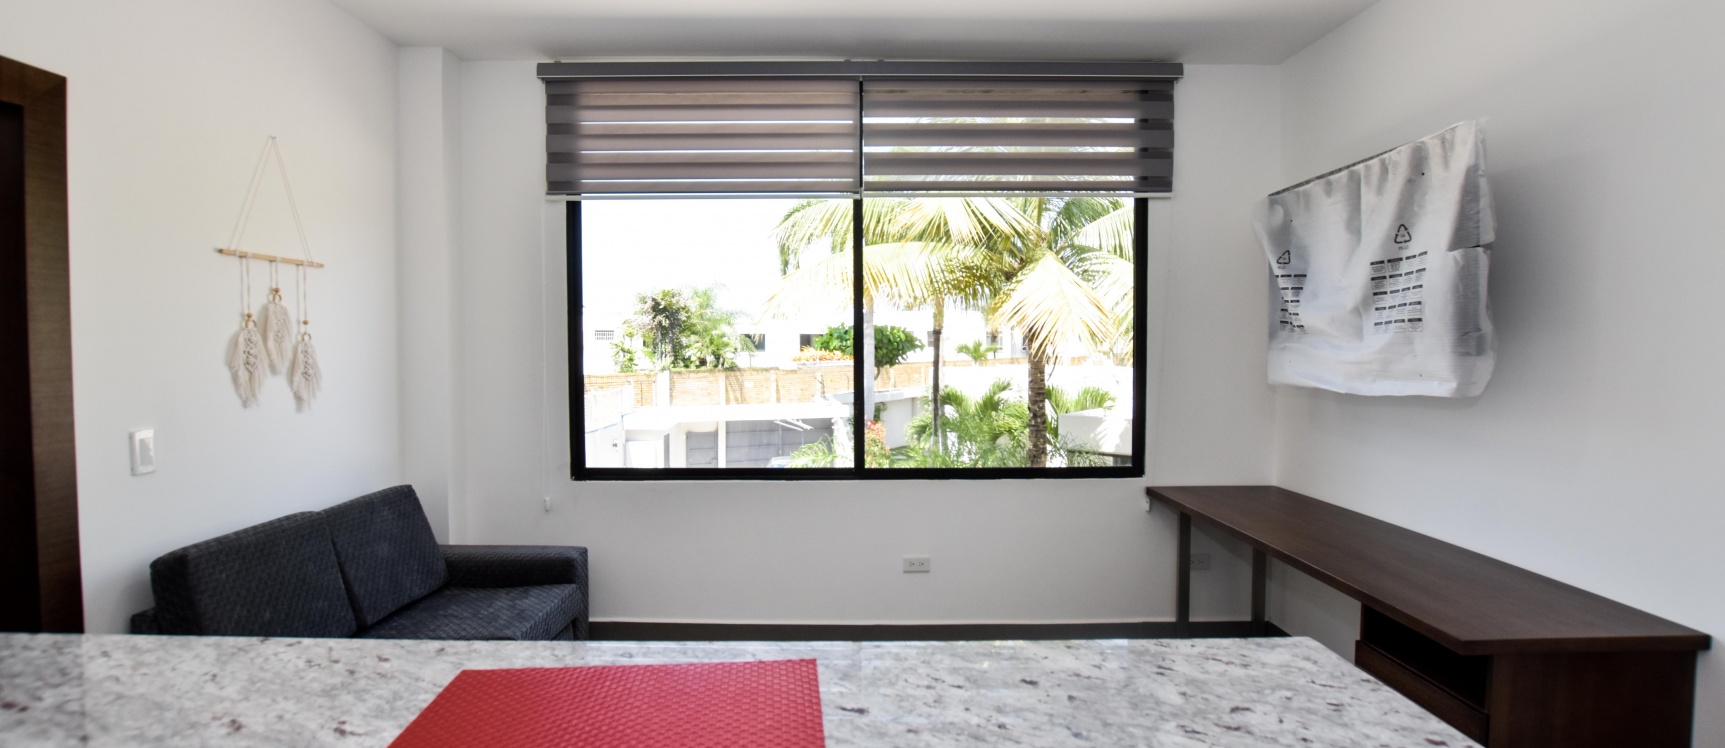 GeoBienes - Suite por estrenar en alquiler en Vía Samborondón - Plusvalia Guayaquil Casas de venta y alquiler Inmobiliaria Ecuador